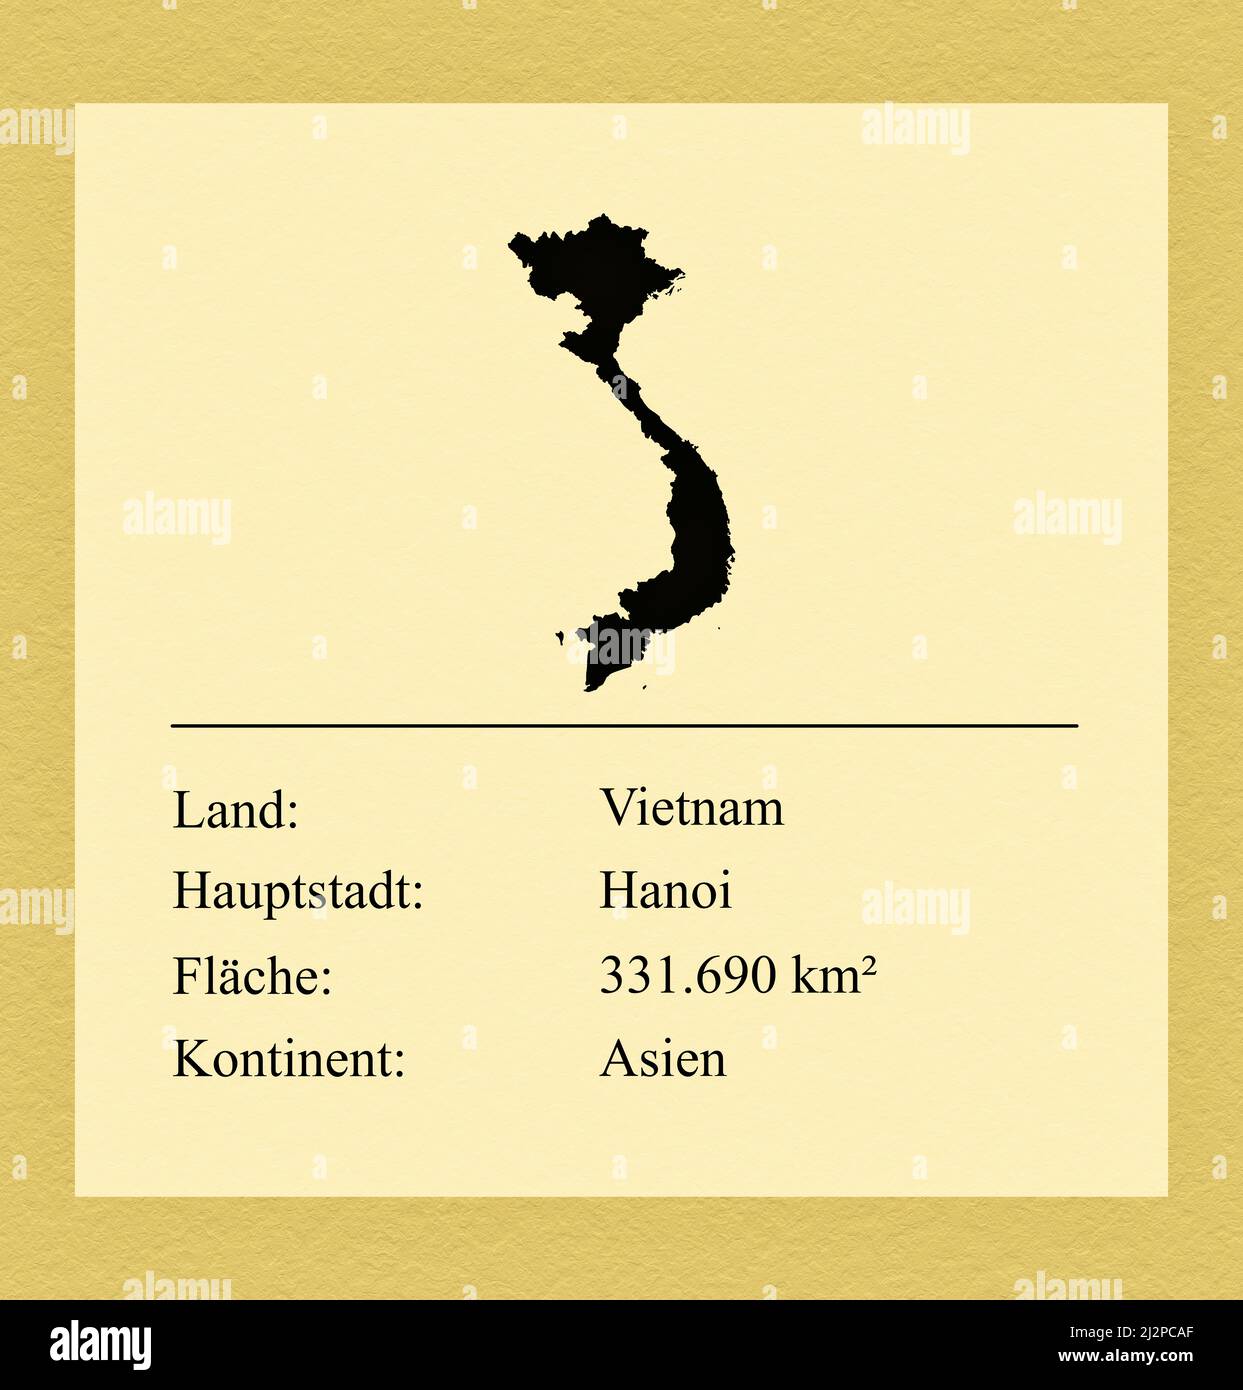 Umrisse des Landes Vietnam, darunter ein kleiner Steckbrief mit Ländernamen, Hauptstadt, Fläche und Kontinent Foto Stock